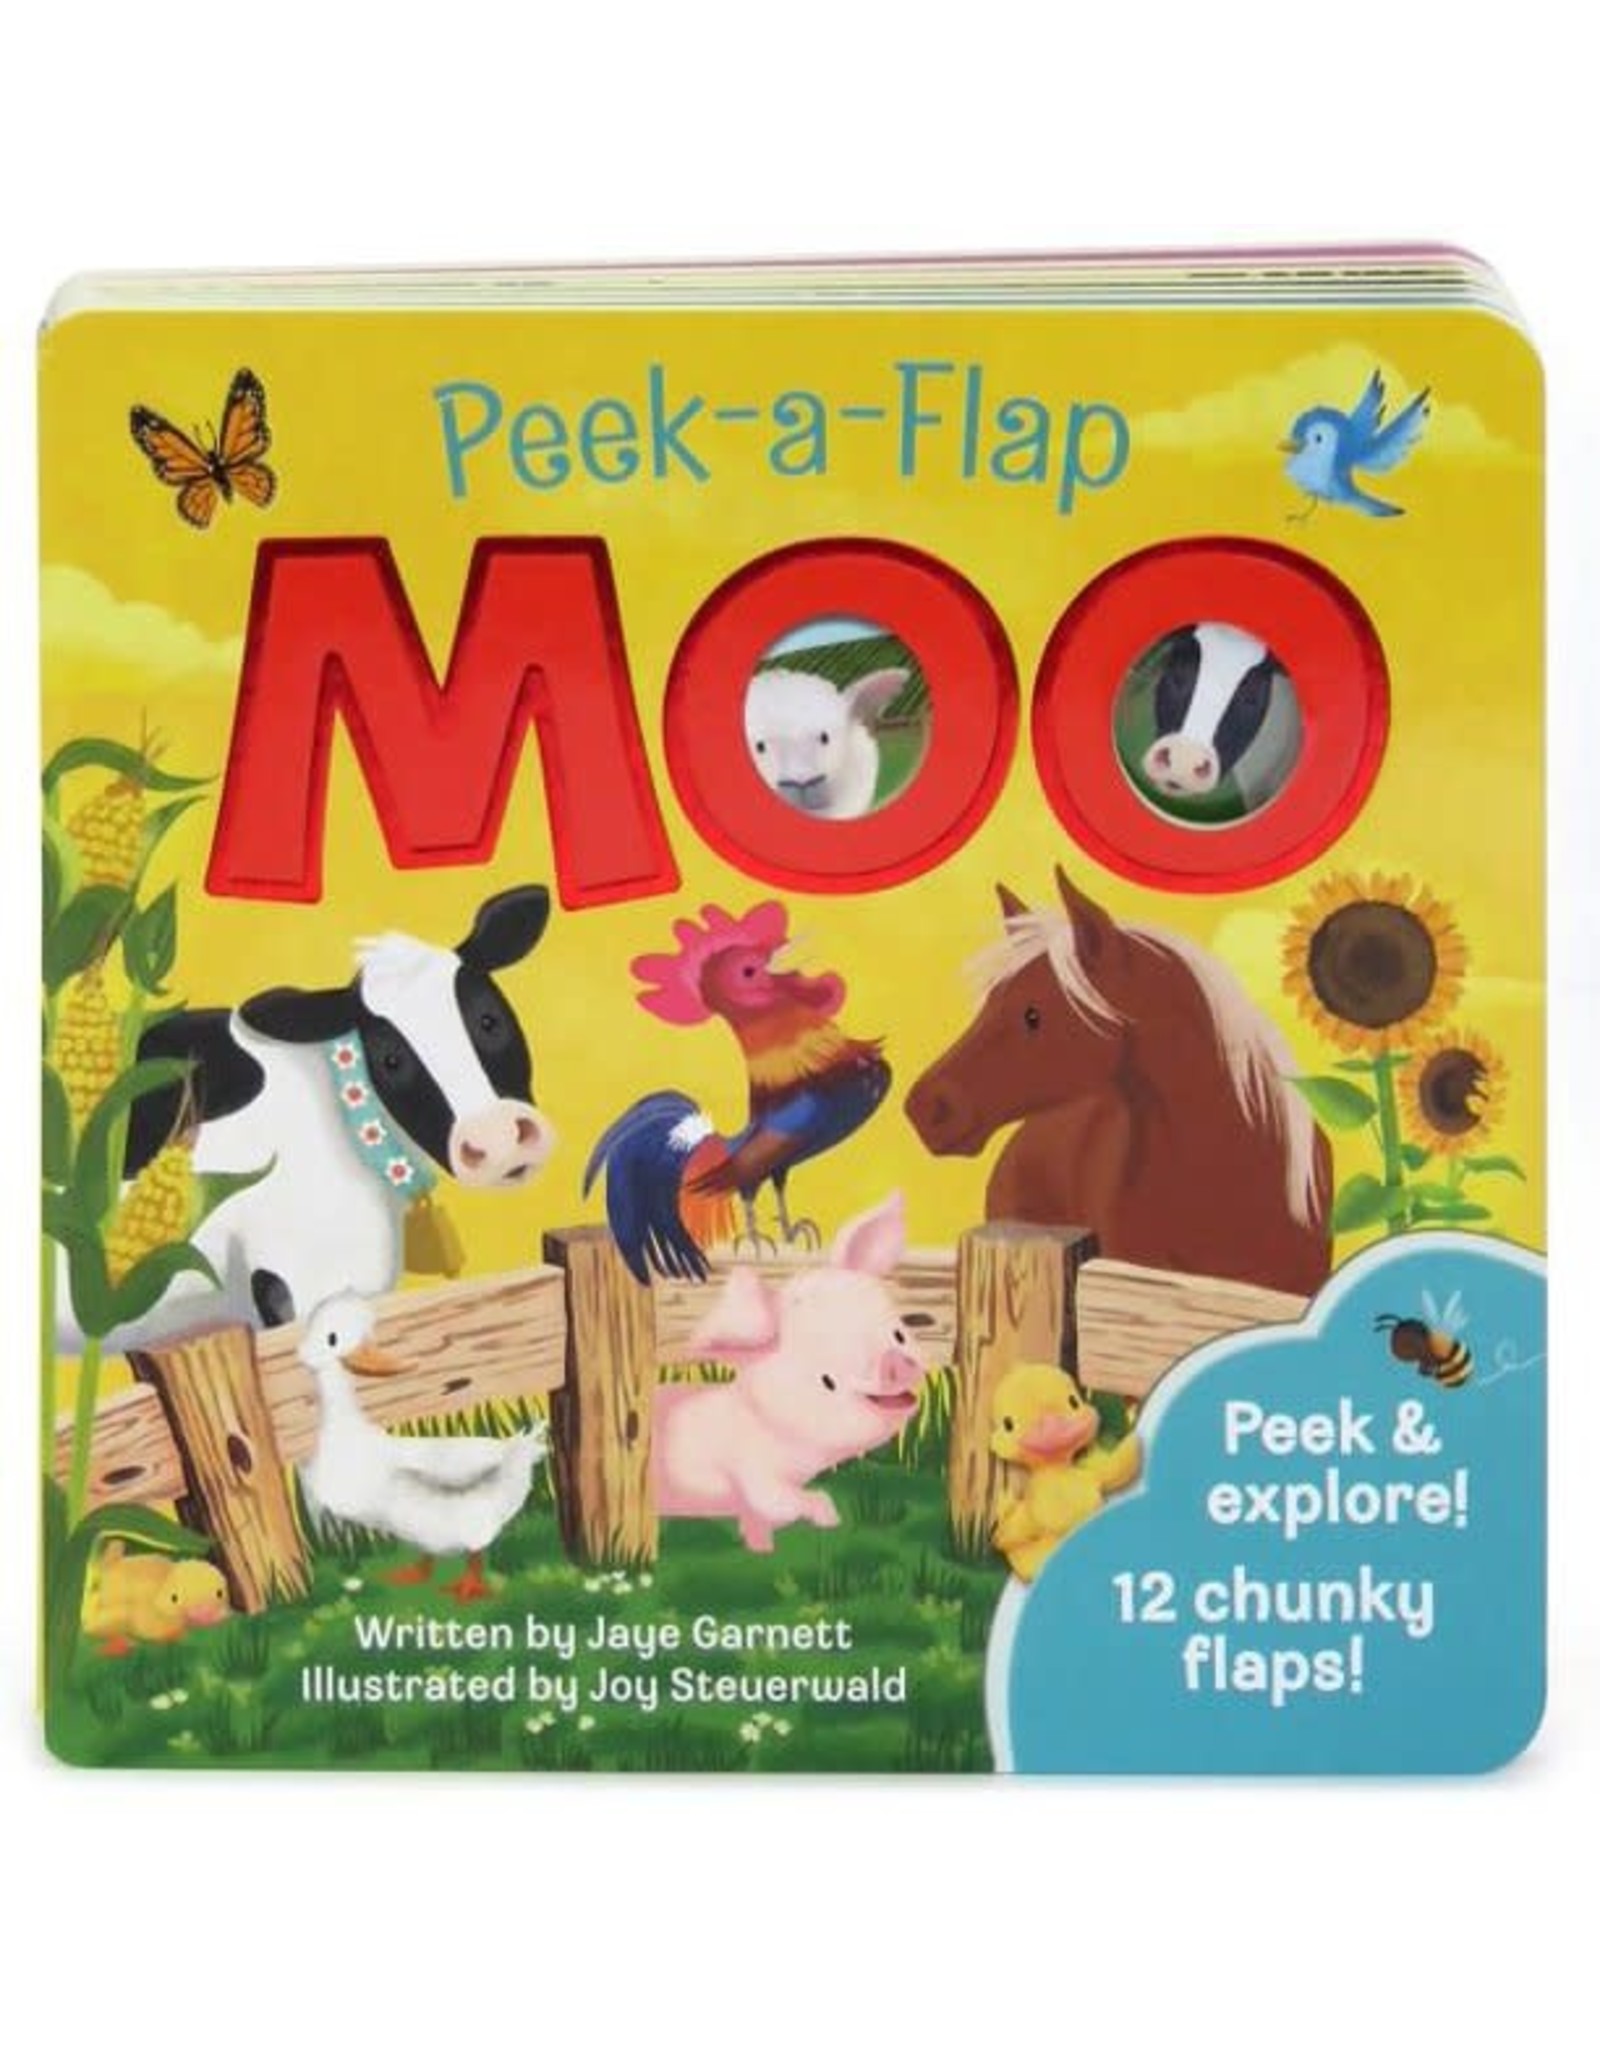 Peek-a-Flap Moo